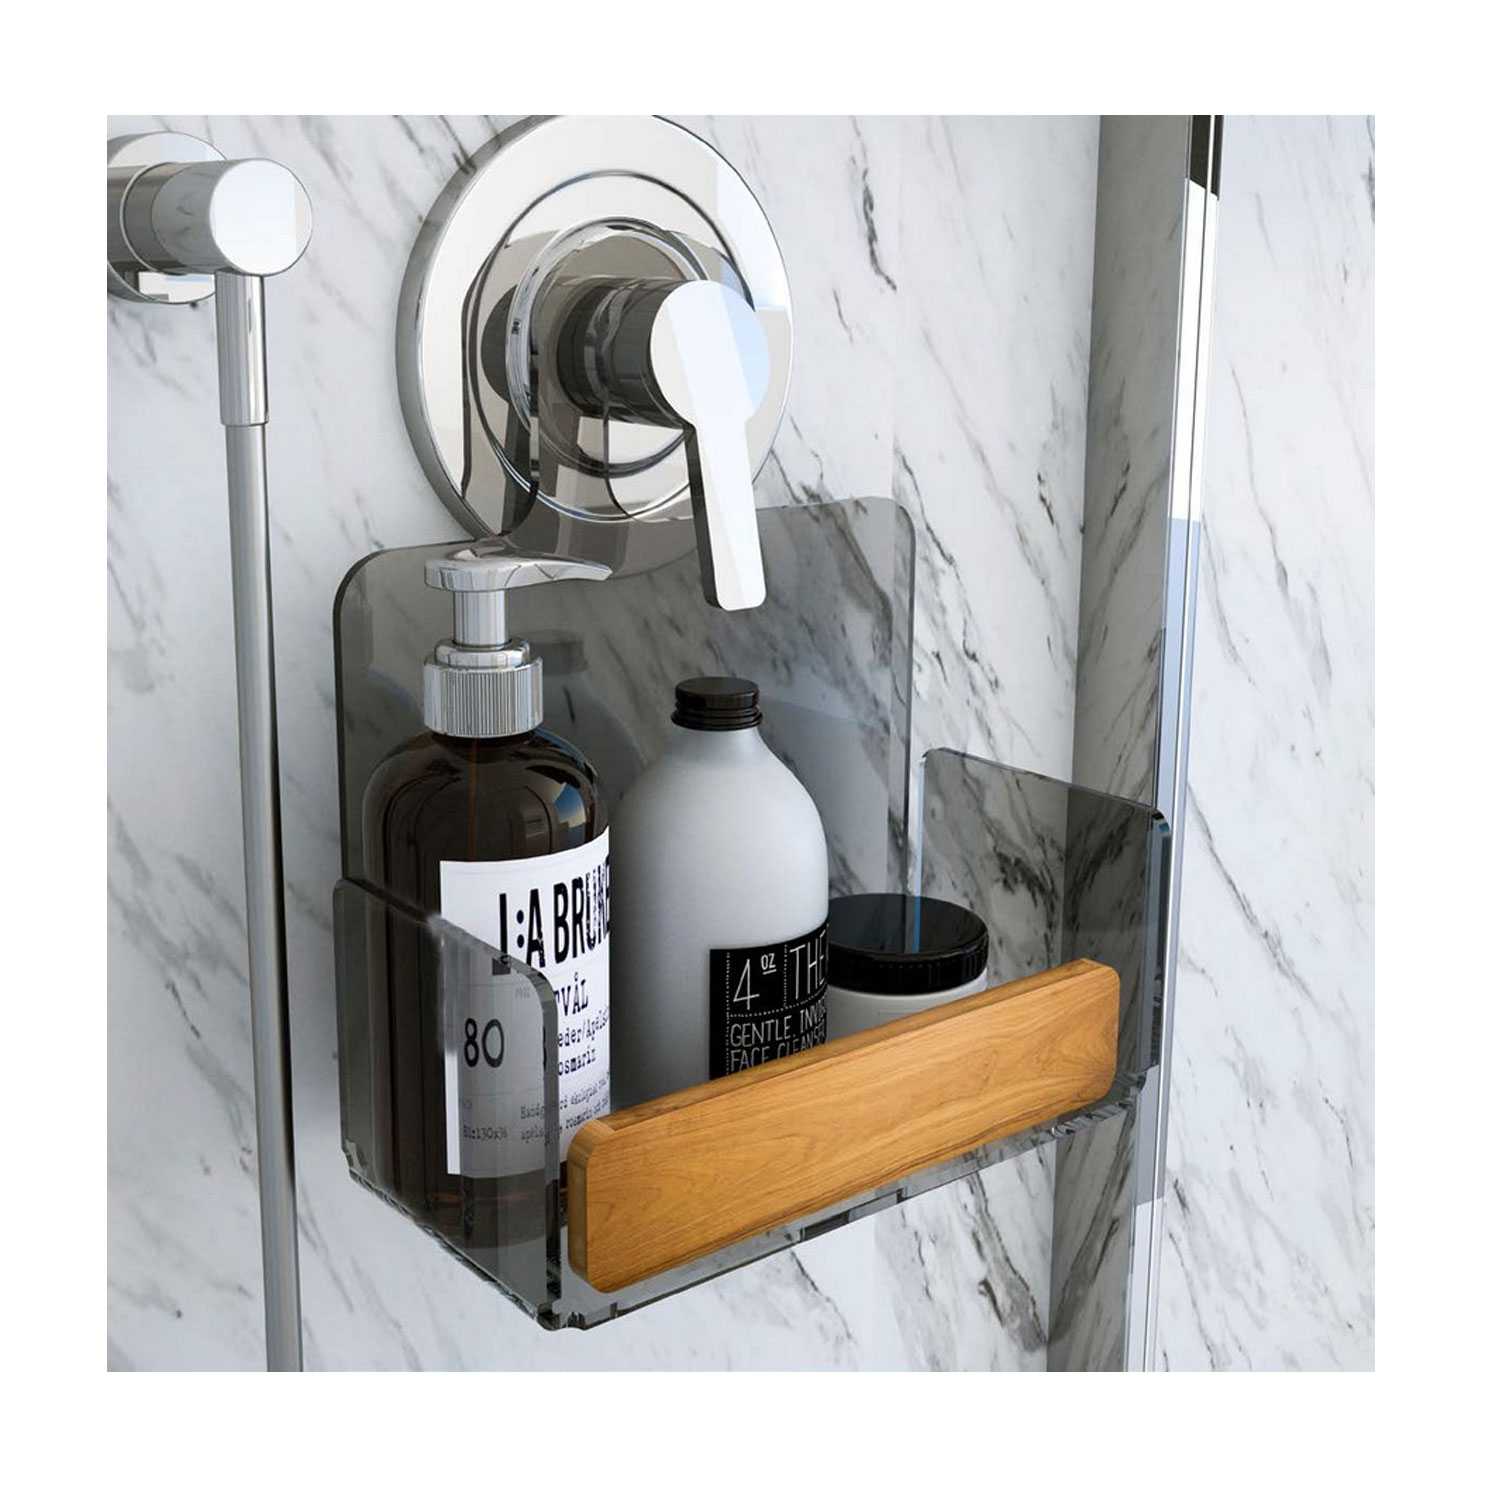 Porta oggetti per rubinetto doccia in Plexiglass fumè trasparente e  dettagli in Teak serie Bright by